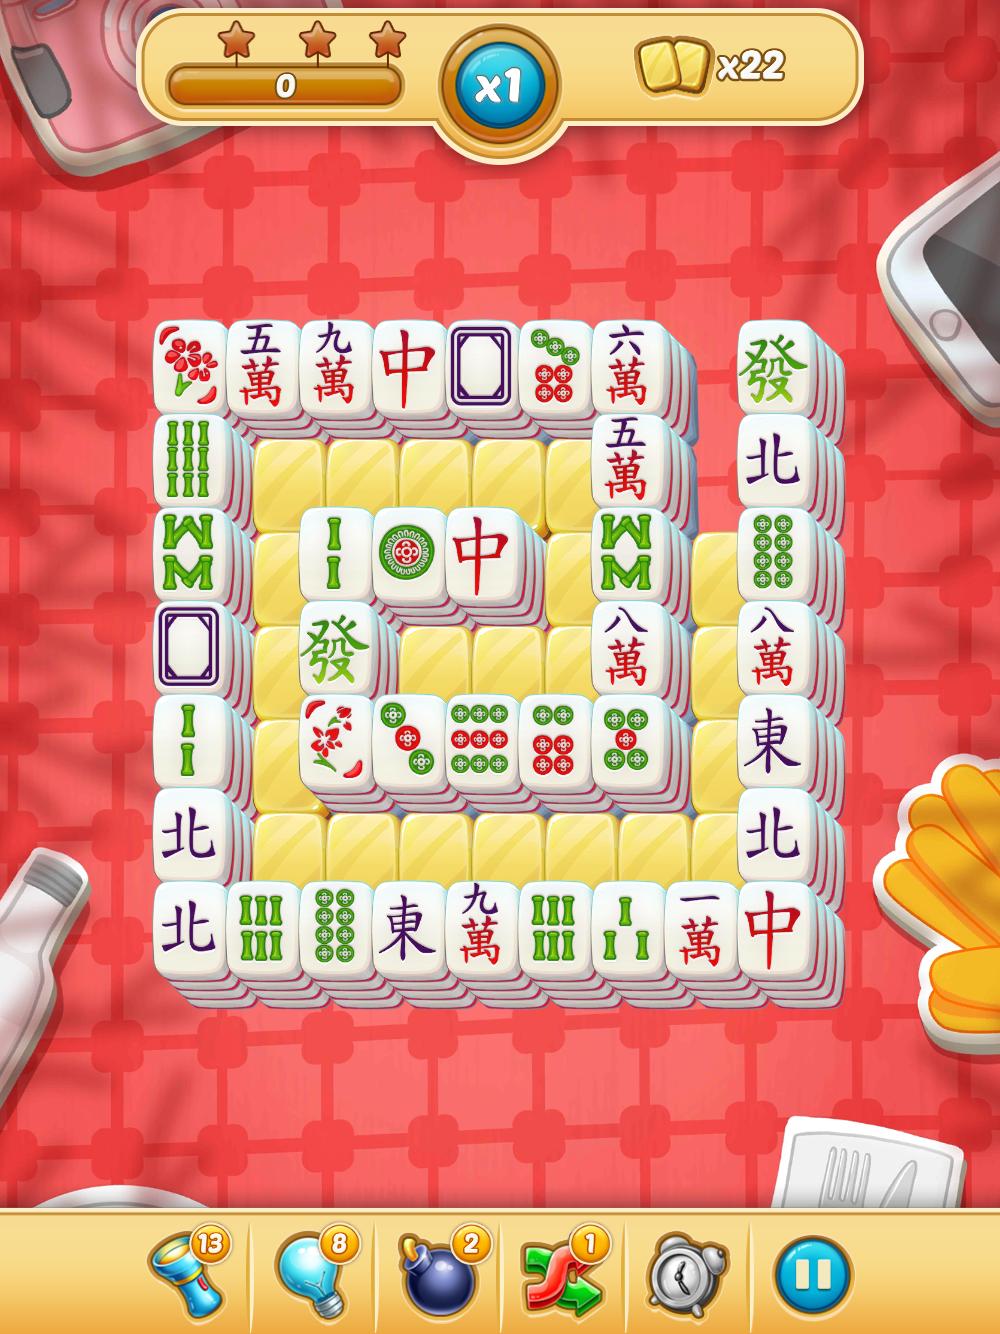 Mahjong City Tours Free Mahjong Classic Game 40.1.0 Screenshot 14